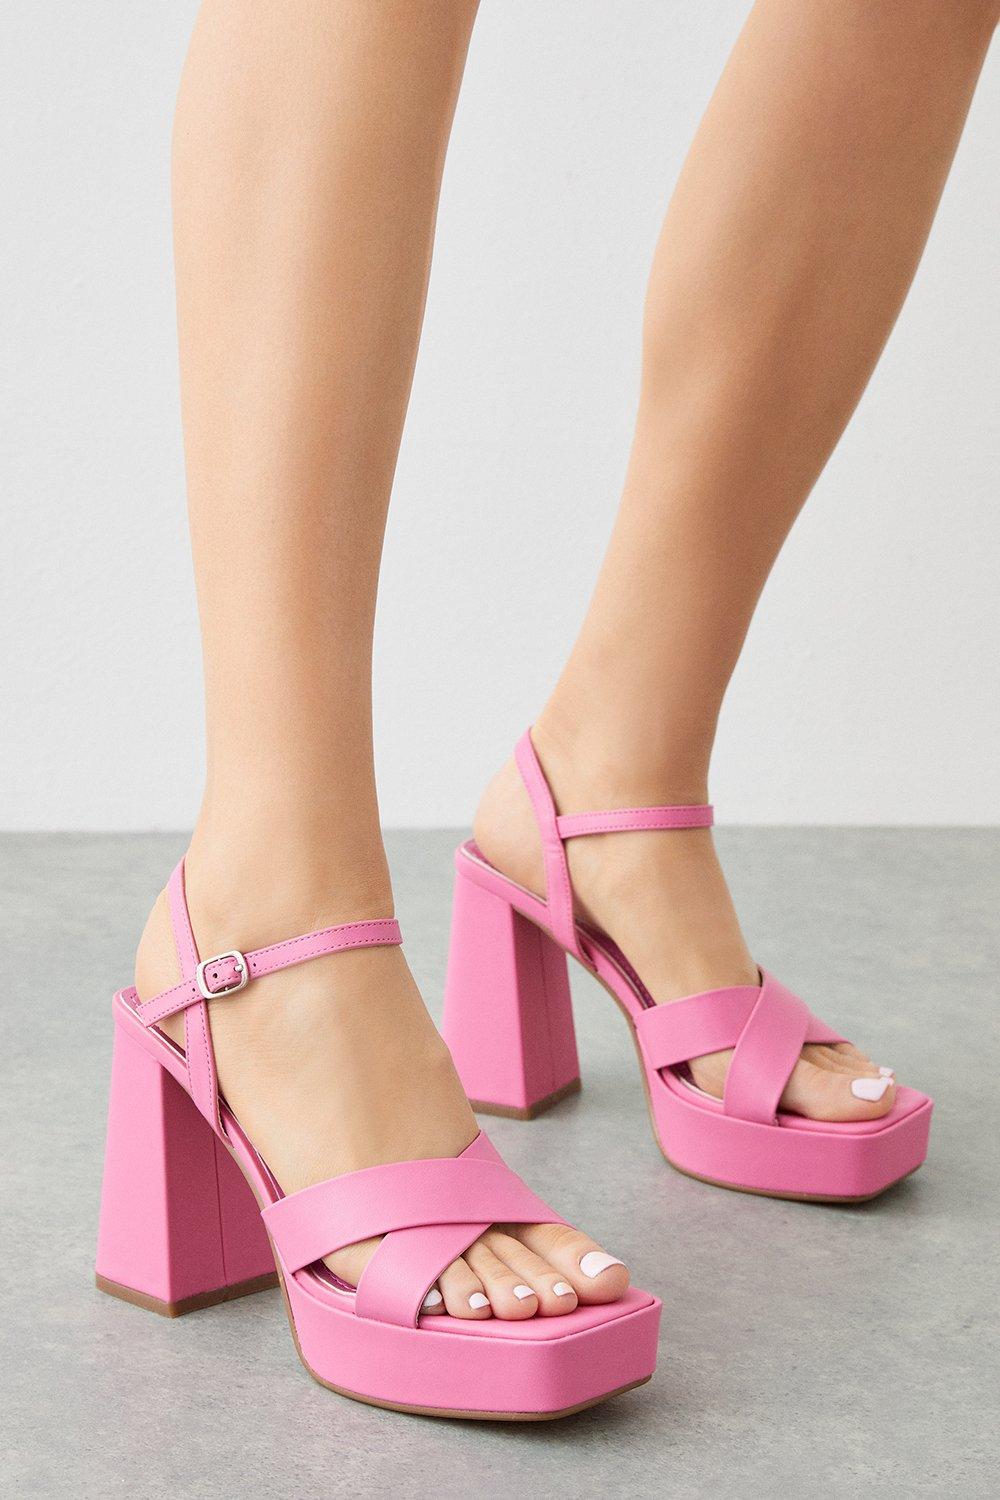 Women’s Tia Cross Strap Platform Heel Sandals - pink - 4